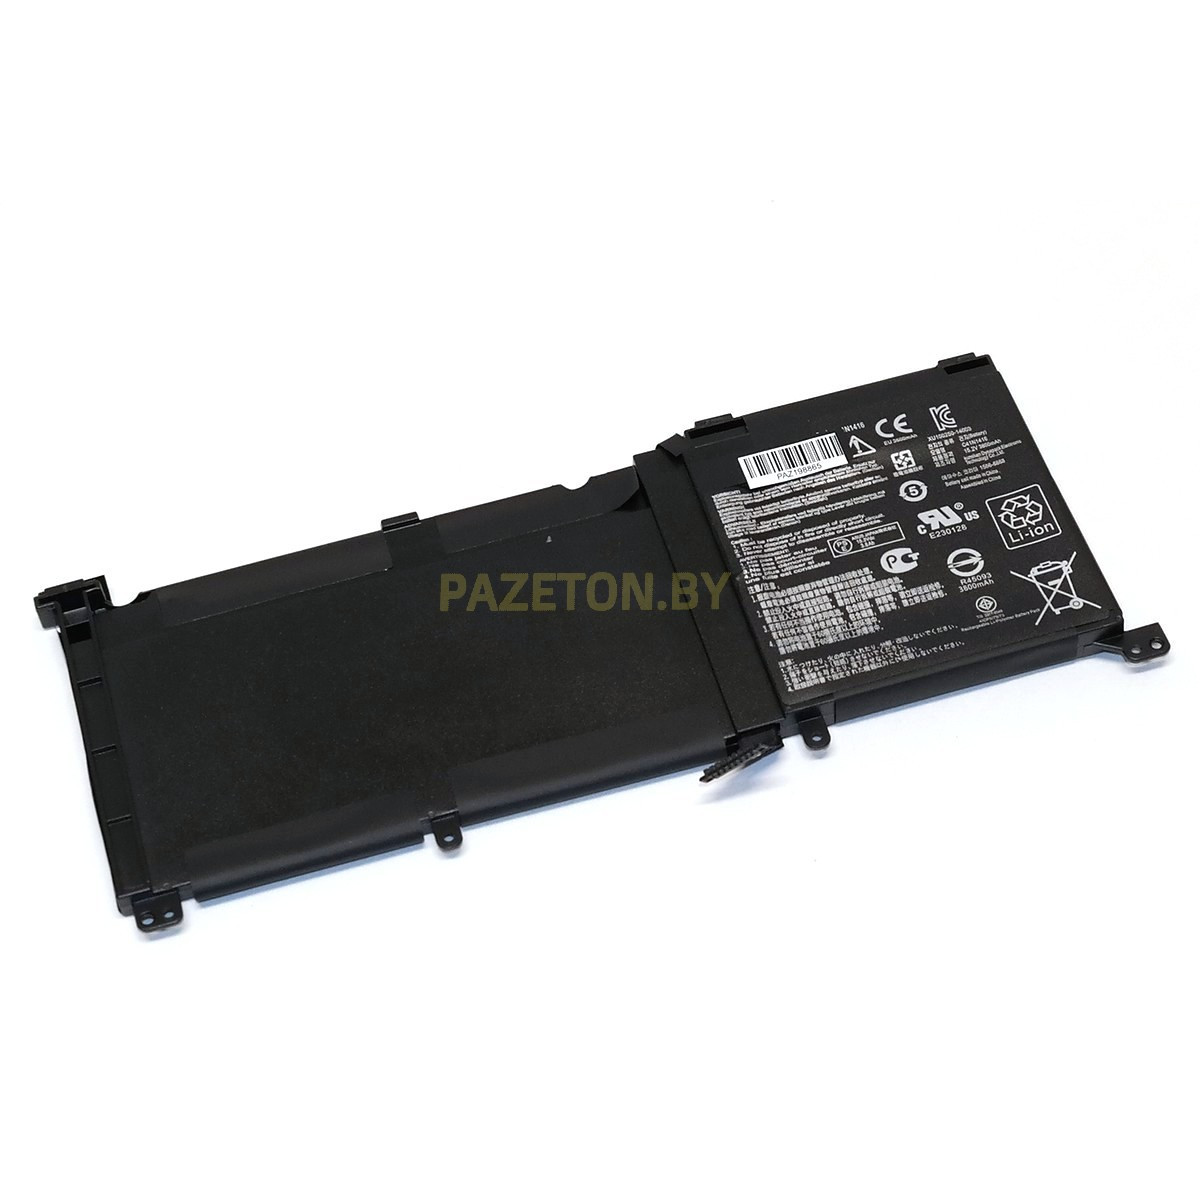 Батарея C41N1416 15,2V 60Wh для Asus Zenbook Pro UX501JW UX501VW N501VW и других моделей ноутбуков